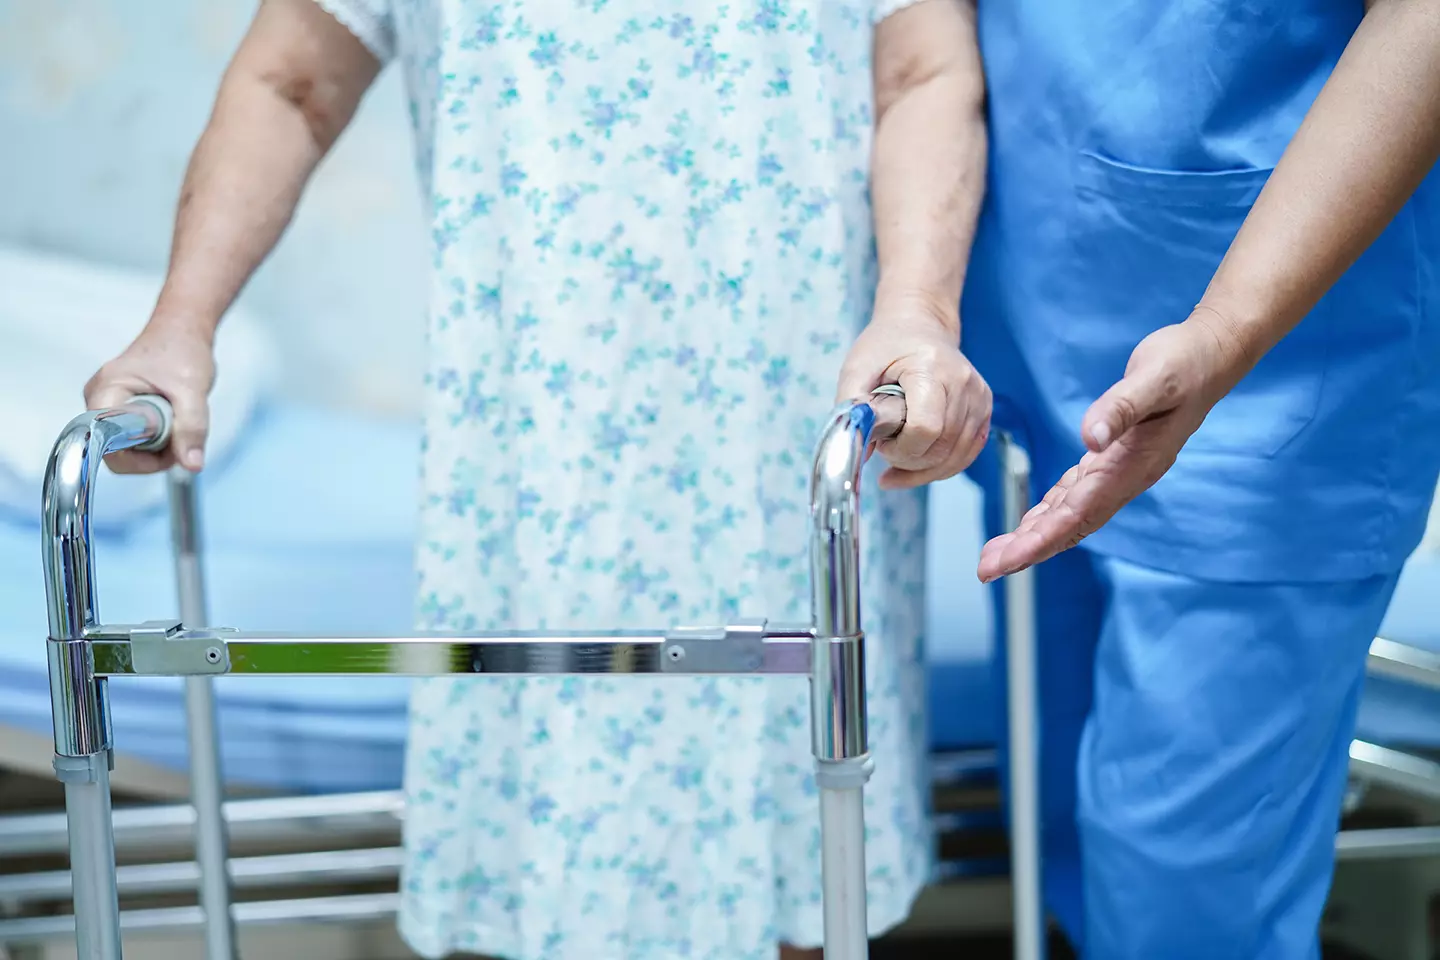 Enfermero ayudando a un enfermo con andadera mostrando como el Implante electrónico permite caminar nuevamente a persona paralizada.